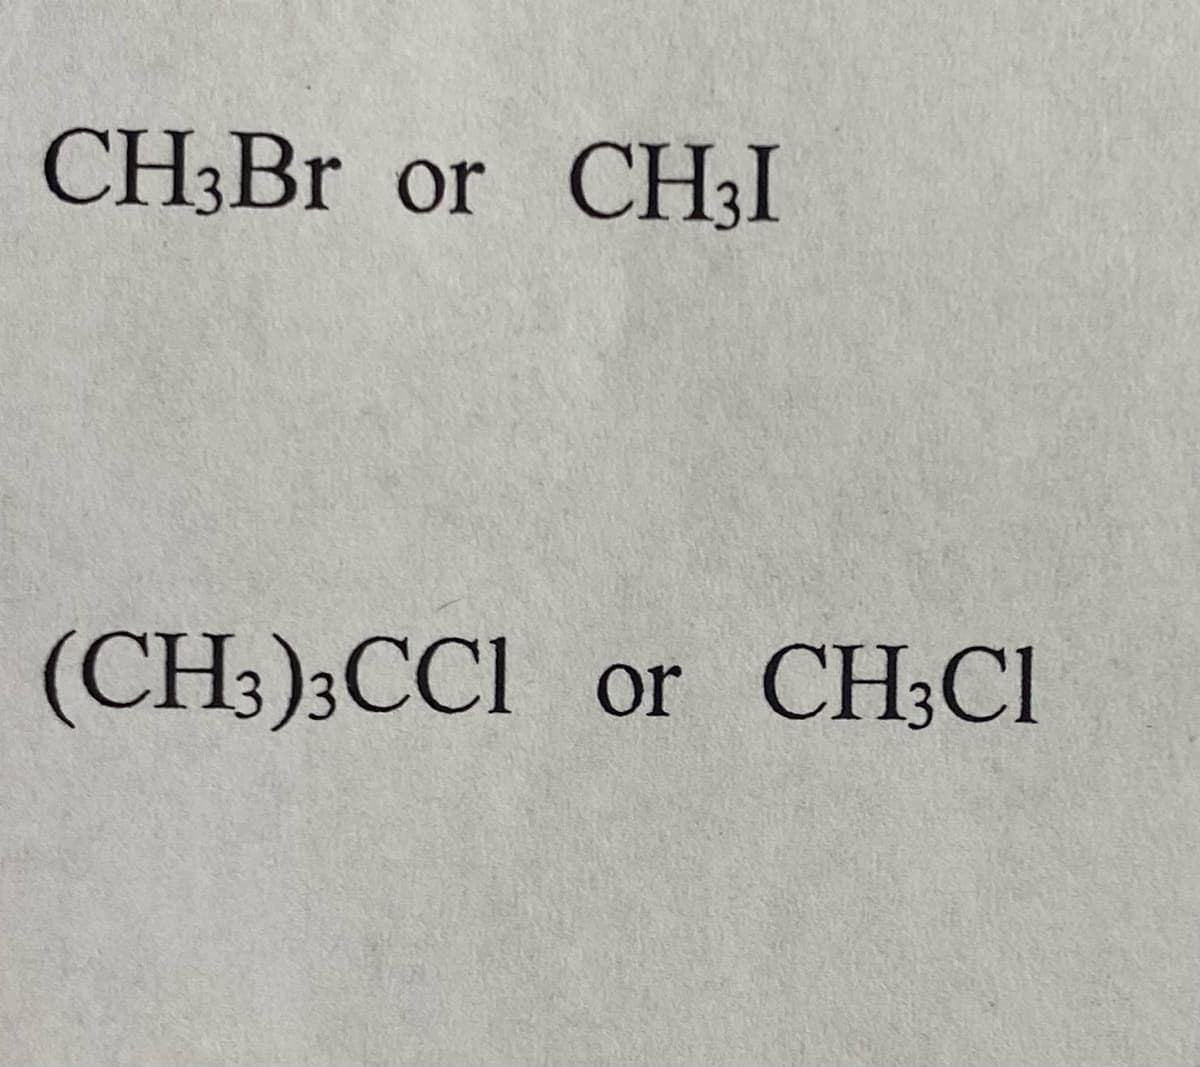 CH3Br or CH3I
(CH3)3CC1 or CH3C1